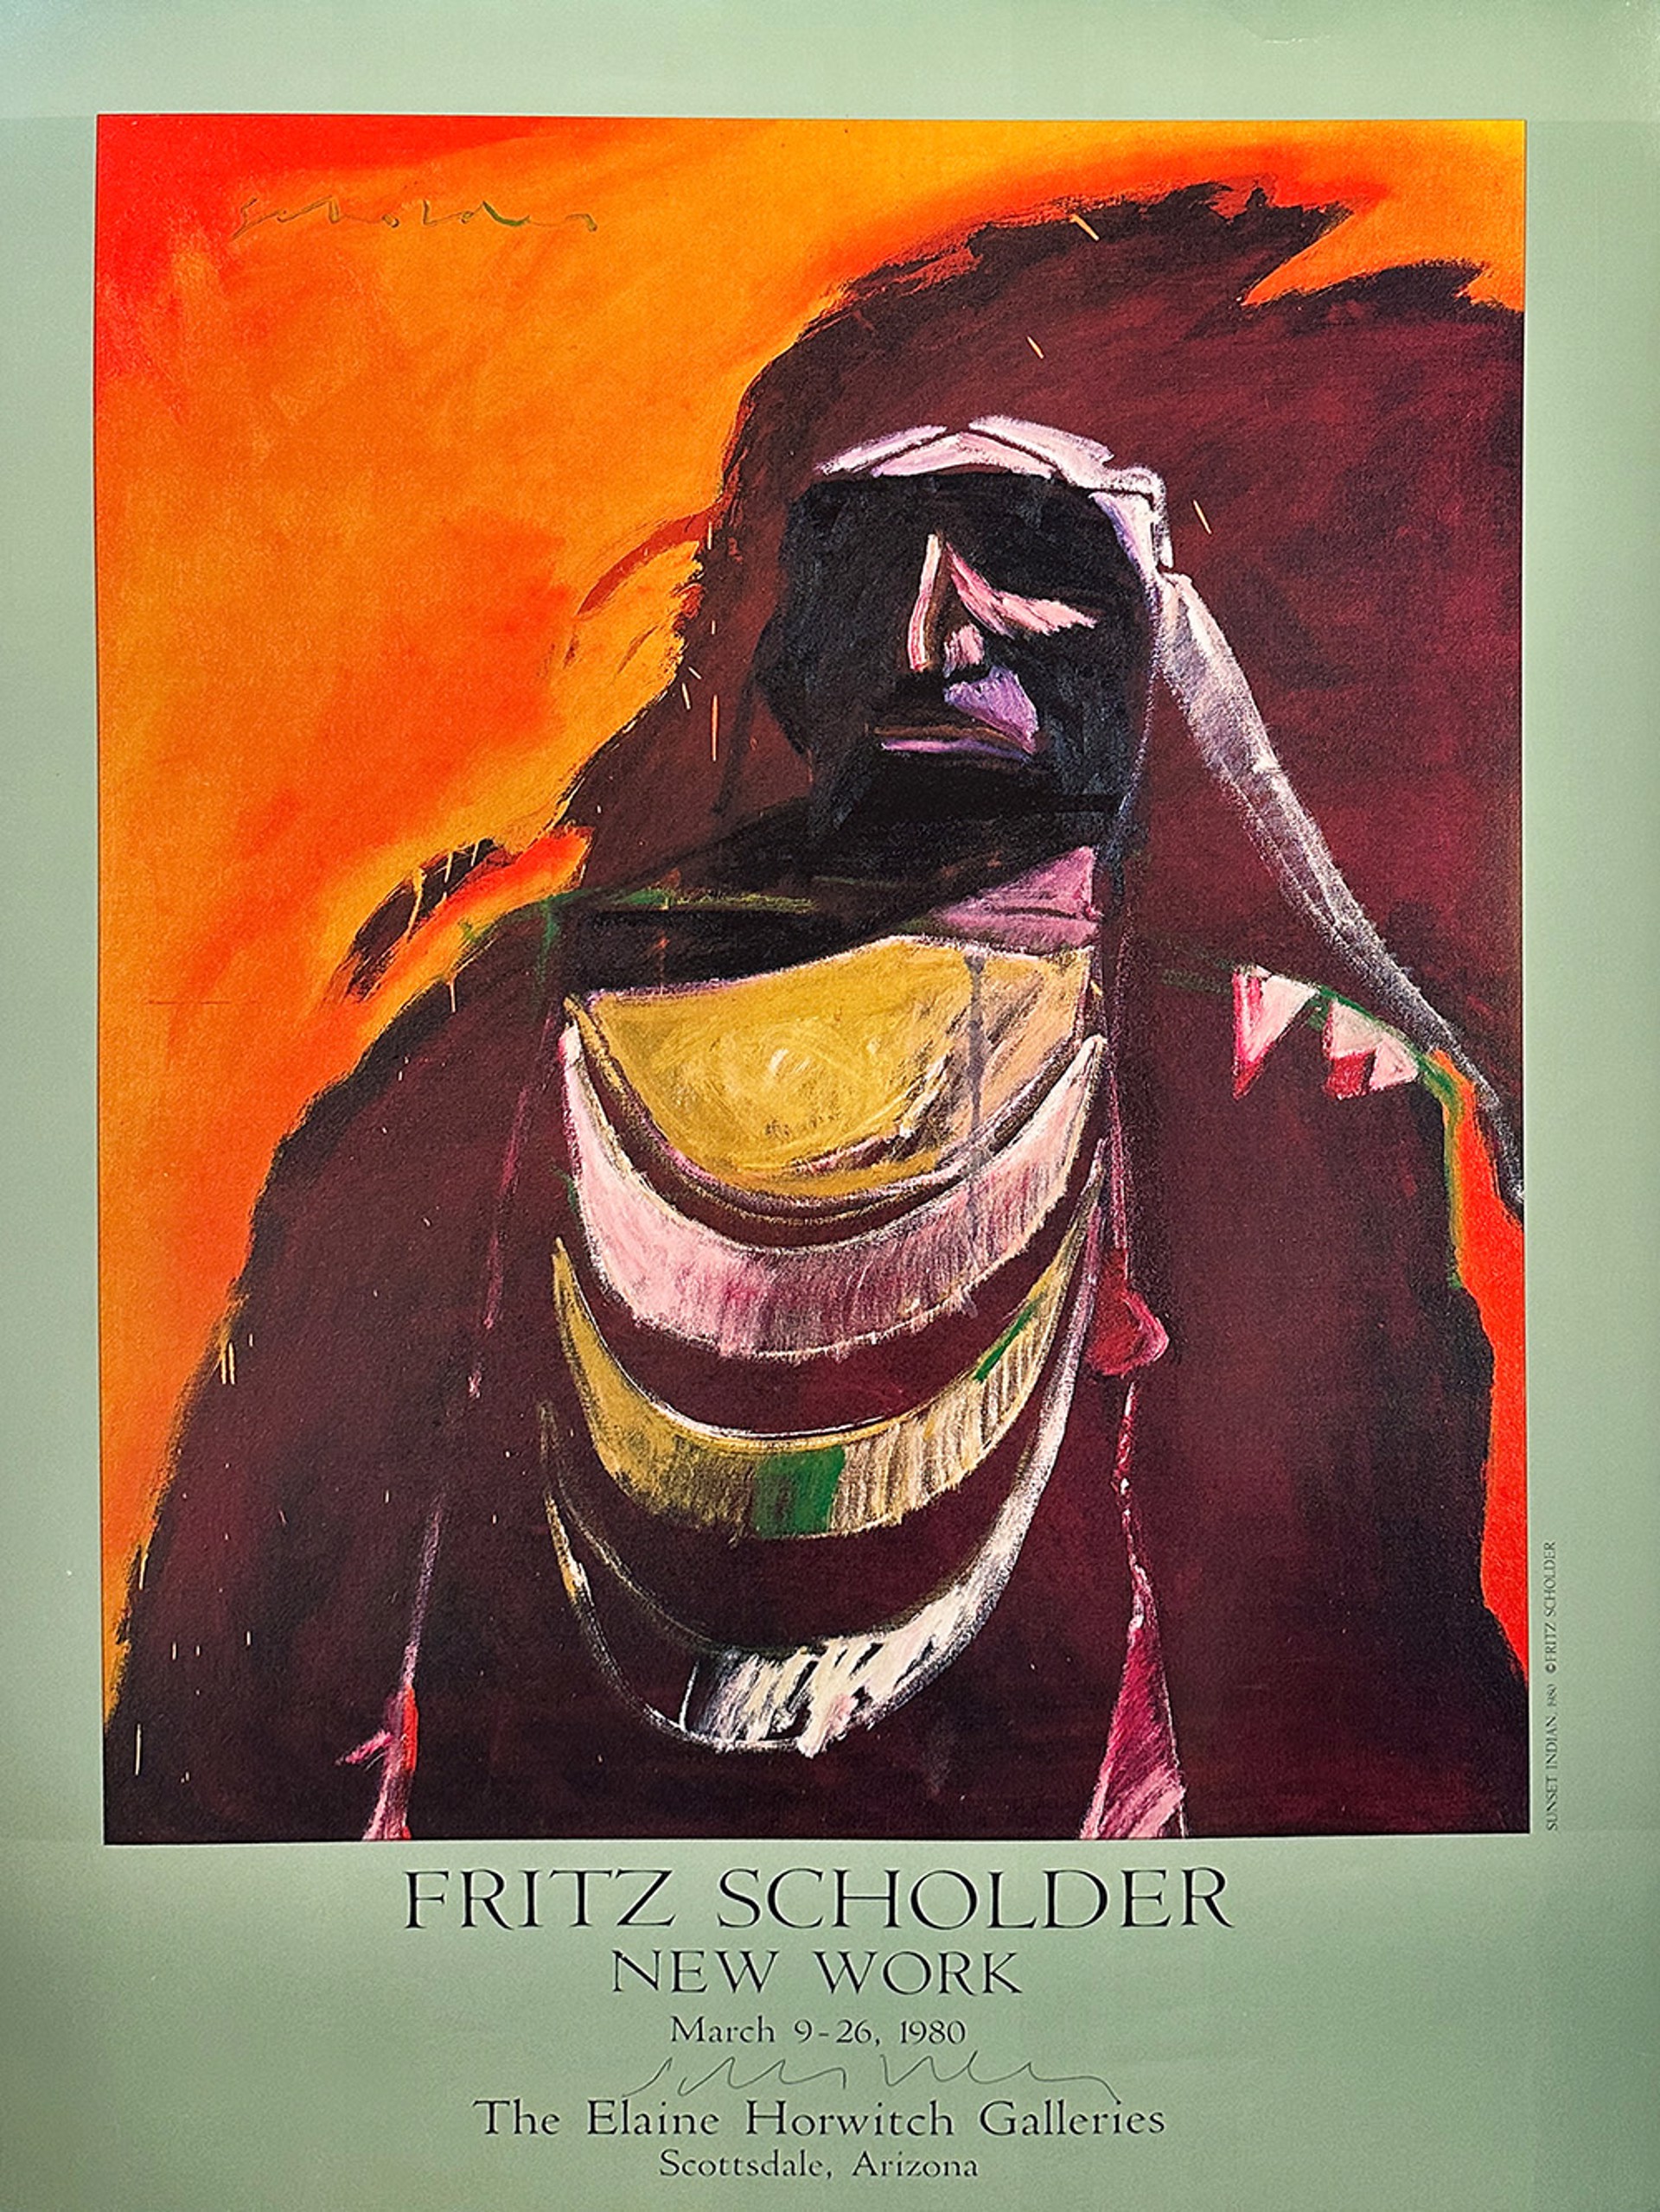 Elaine Horwitch Galleries 'New Work' by Fritz Scholder